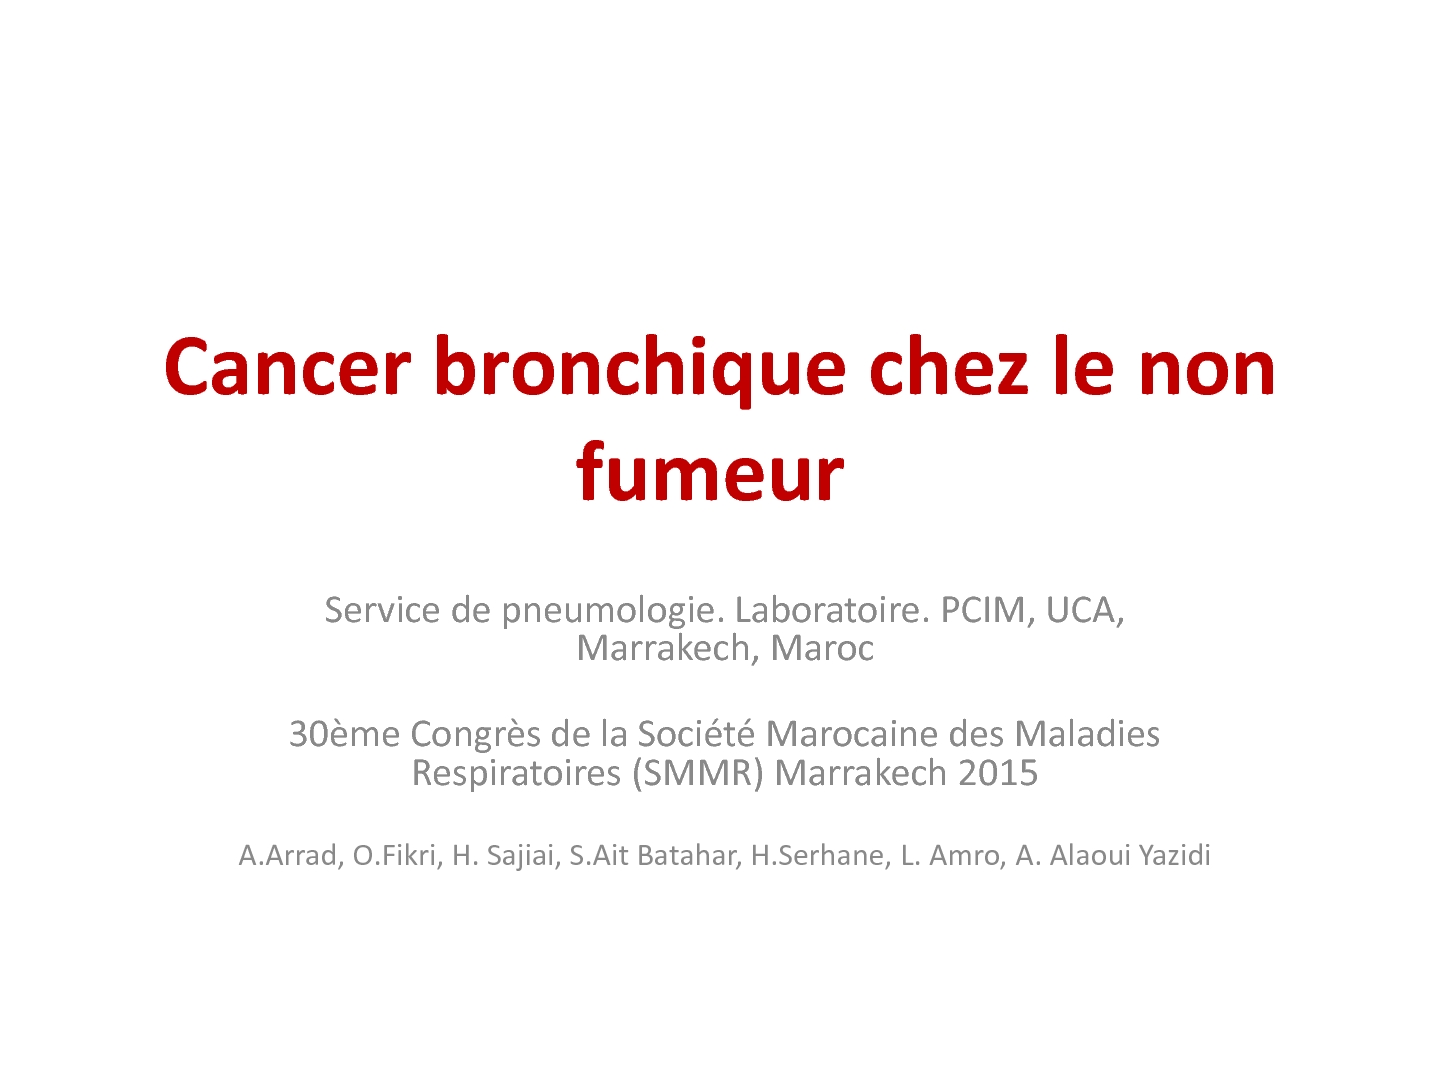 Cancer bronchique chez le non fumeur. A. ARRAD